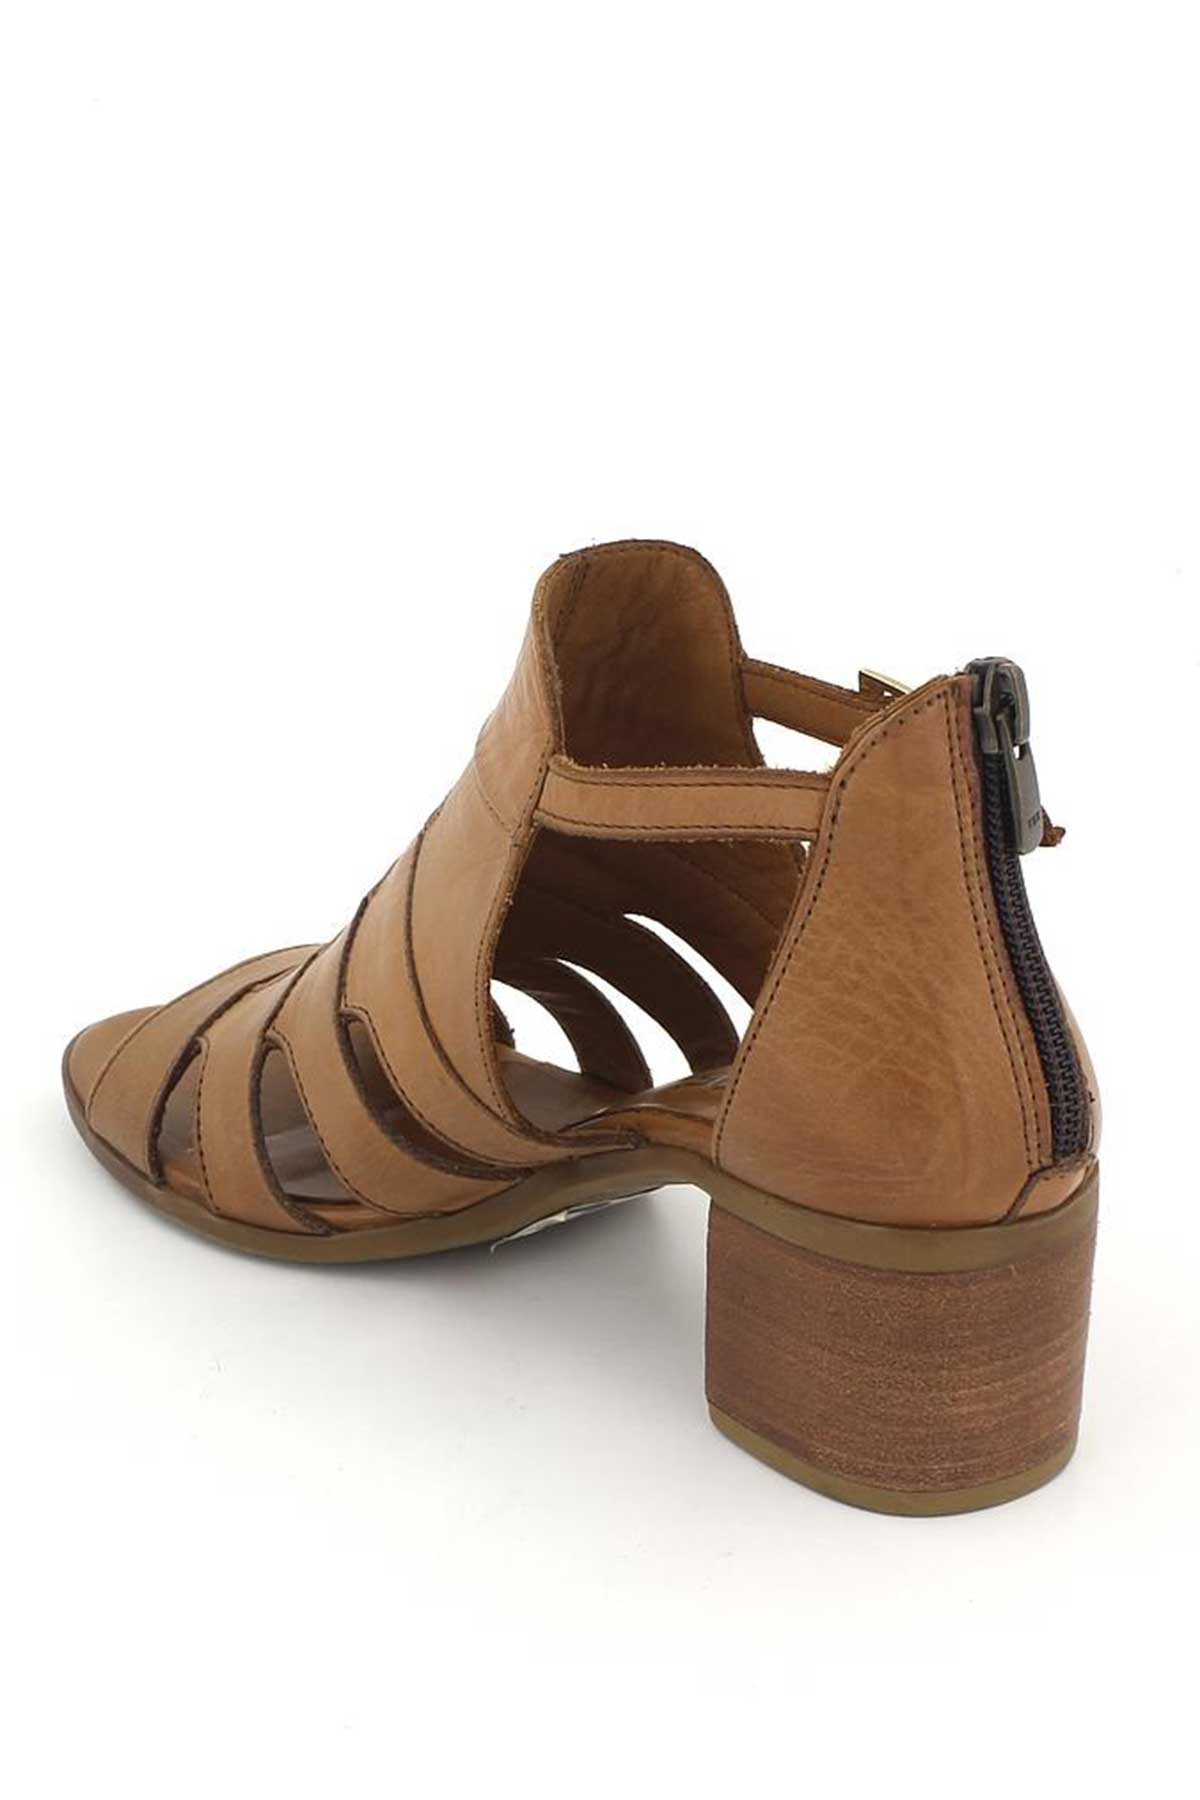 Kadın Topuklu Deri Sandalet Taba 1857211Y